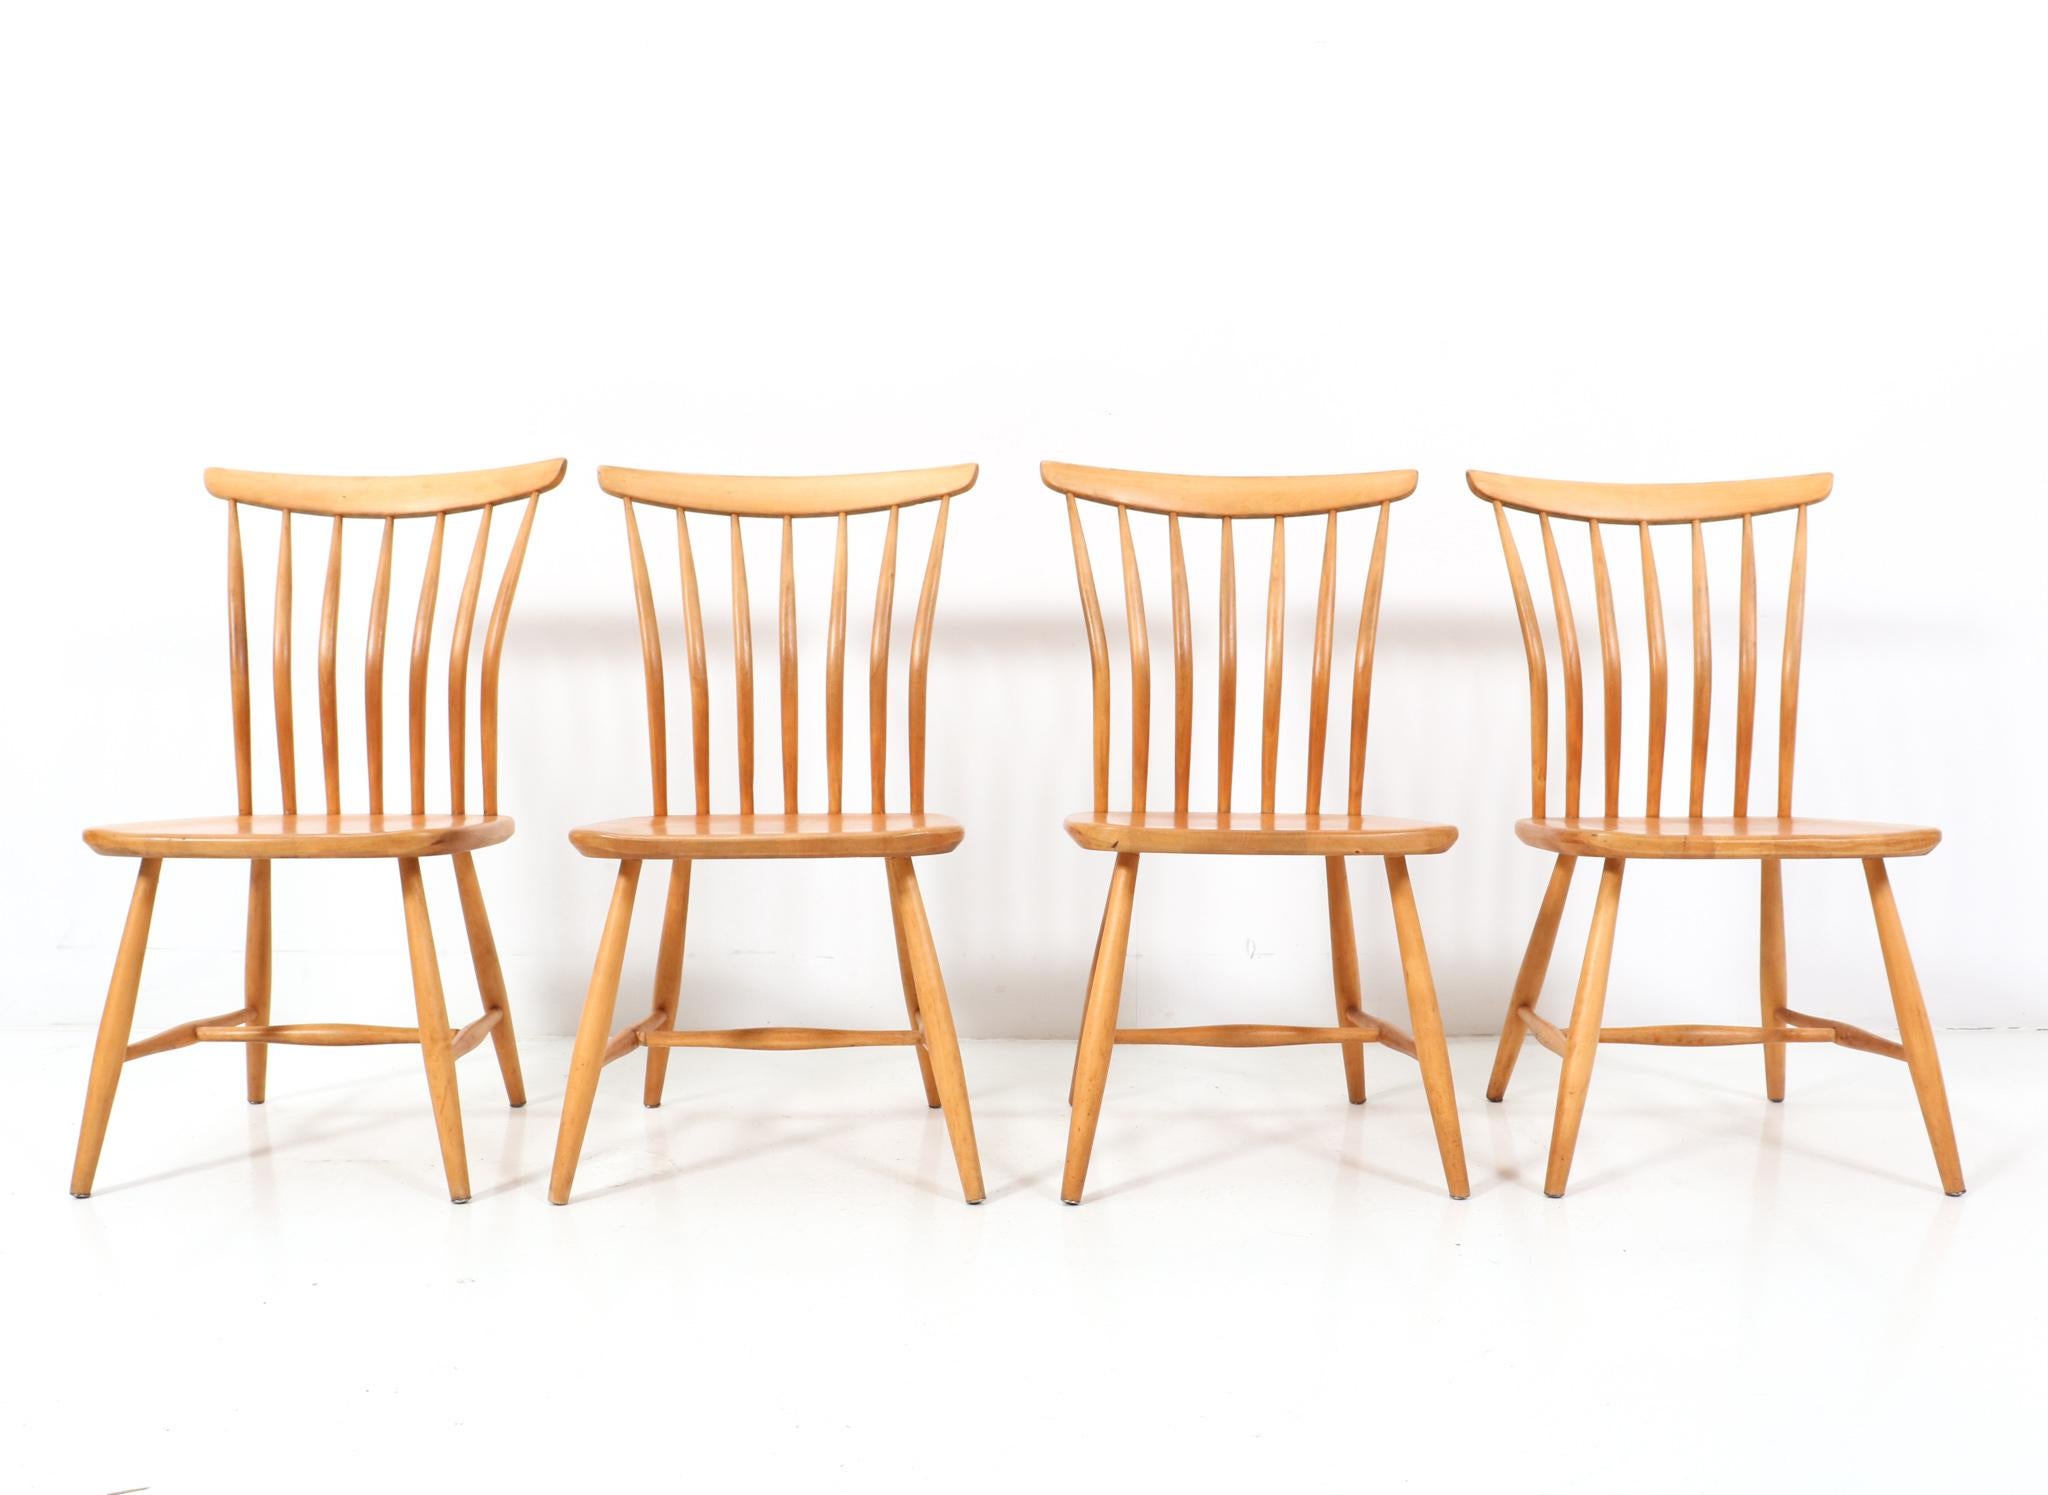 Atemberaubender Satz von vier Mid-Century Modern Esszimmerstühlen.
Design von Bengt Akerblom & Gunnar Eklöf für Akerblom Stolen.
Auffälliges schwedisches Design aus den 1950er Jahren.
Massive Birkenholzrahmen und alle vier Stühle sind mit dem